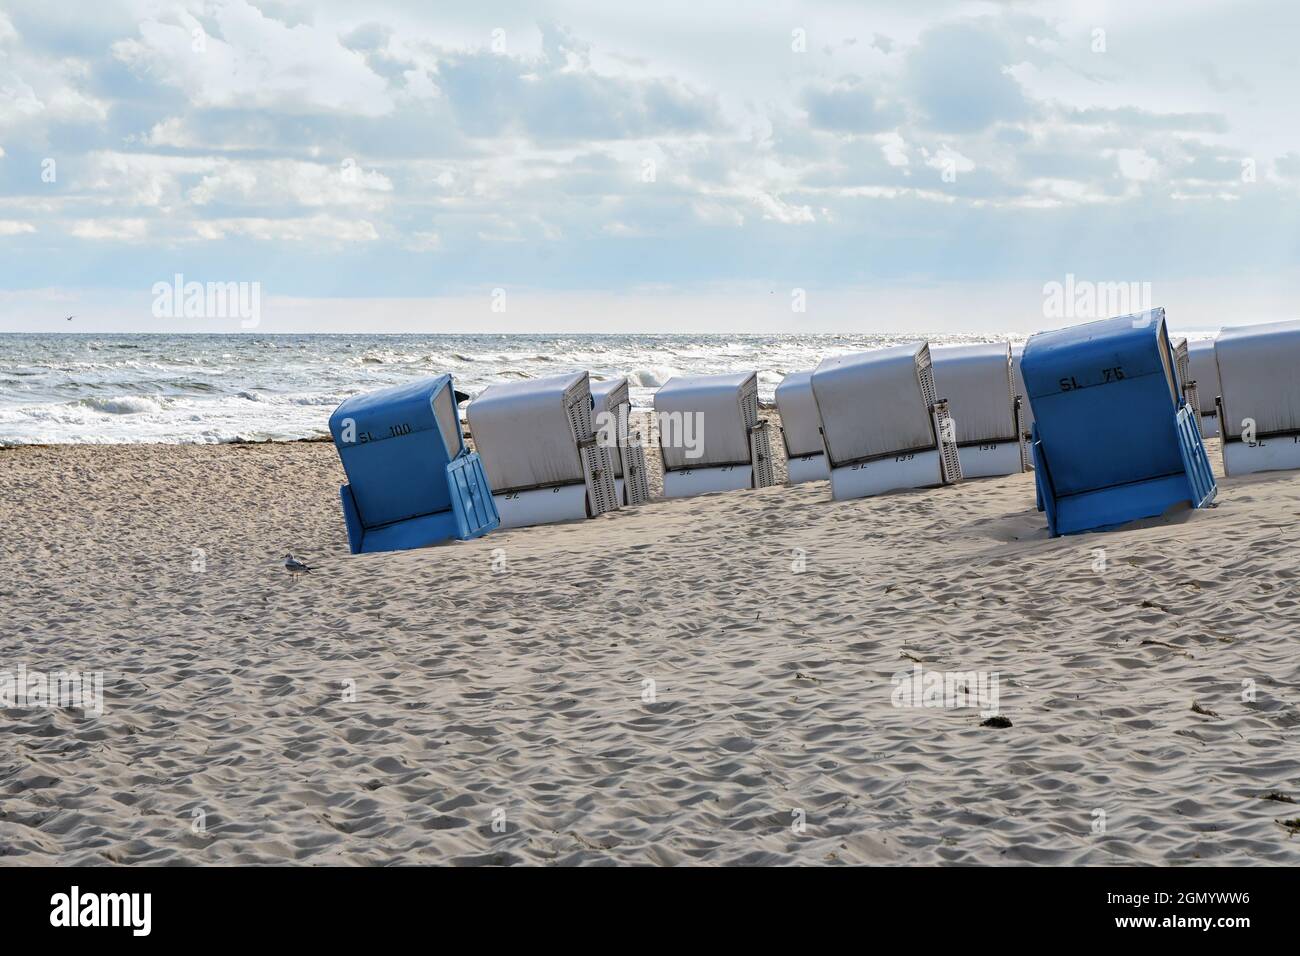 Liegestühle in blau und weiß von hinten, schräg auf dem Sand vor den Wellen am Ufer der Ostsee stehend, sonniger Himmel mit Wolken, c Stockfoto